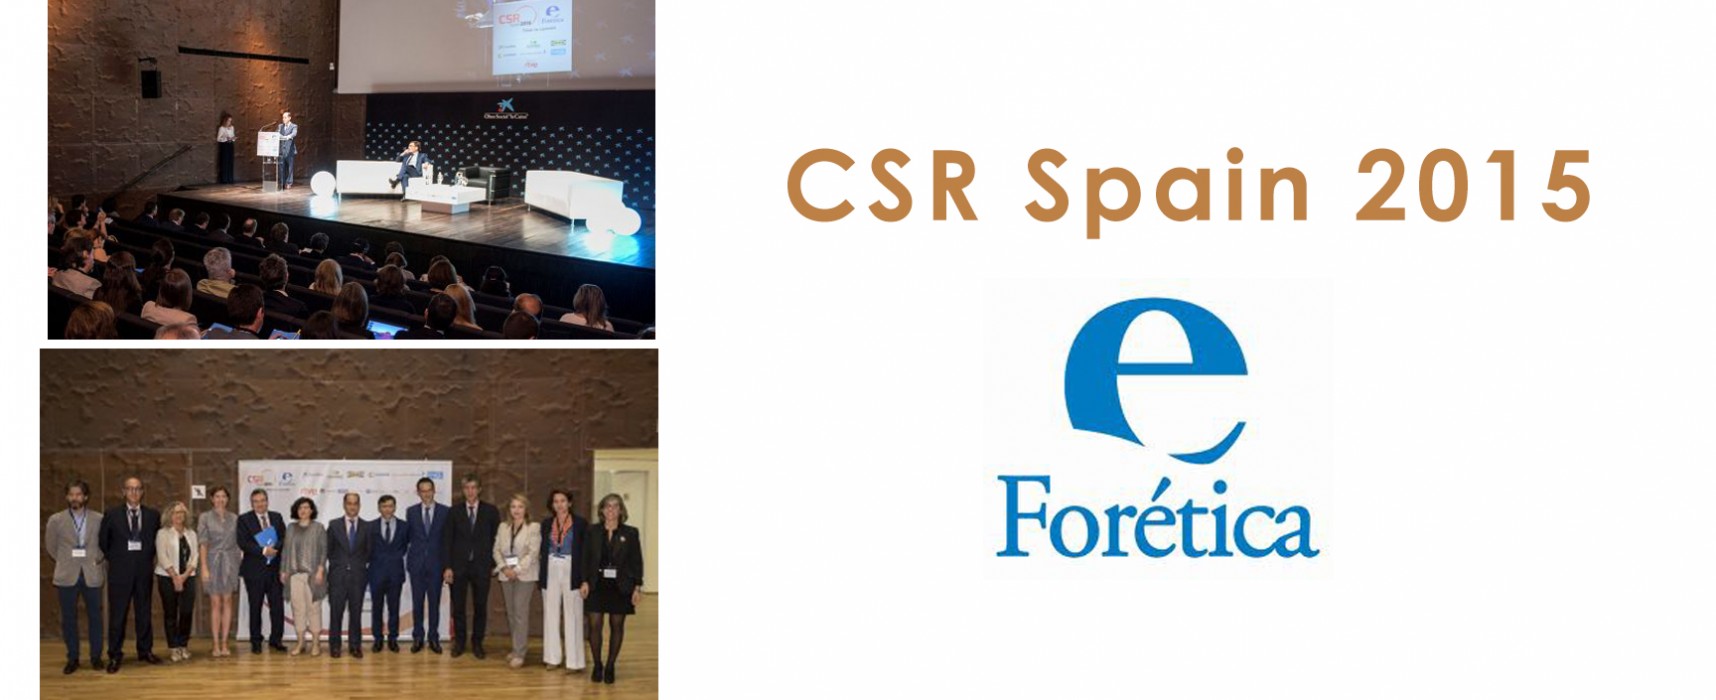 CSR Spain 2015, punto de encuentro de la sostenibilidad empresarial